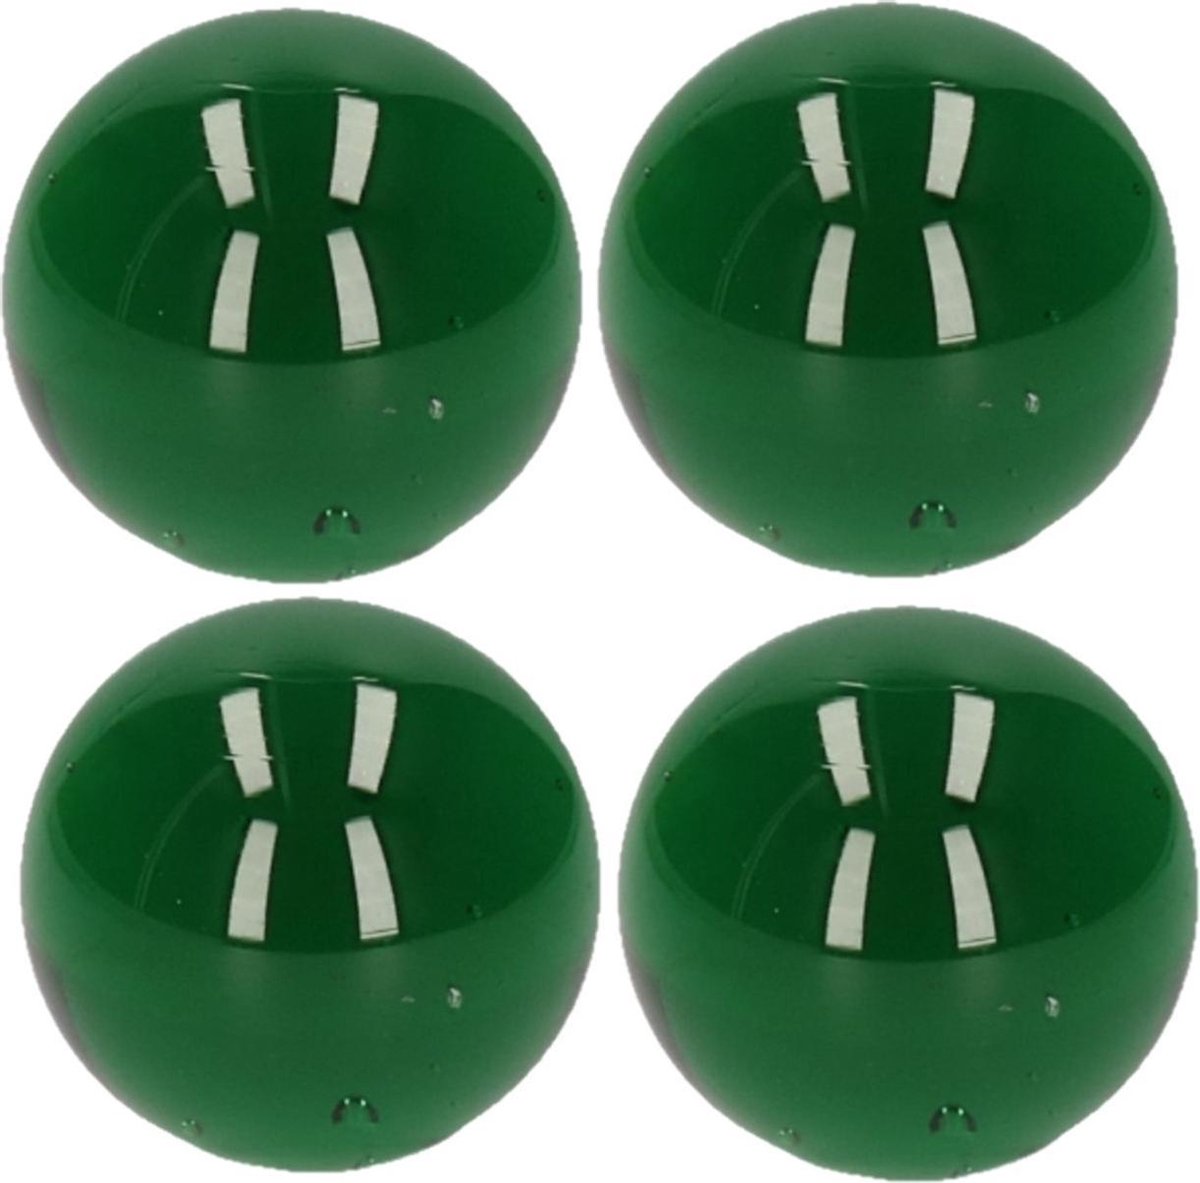 5x stuks knikker groen 6 cm - Bonken - Mega grote knikkers speelgoed - Merkloos